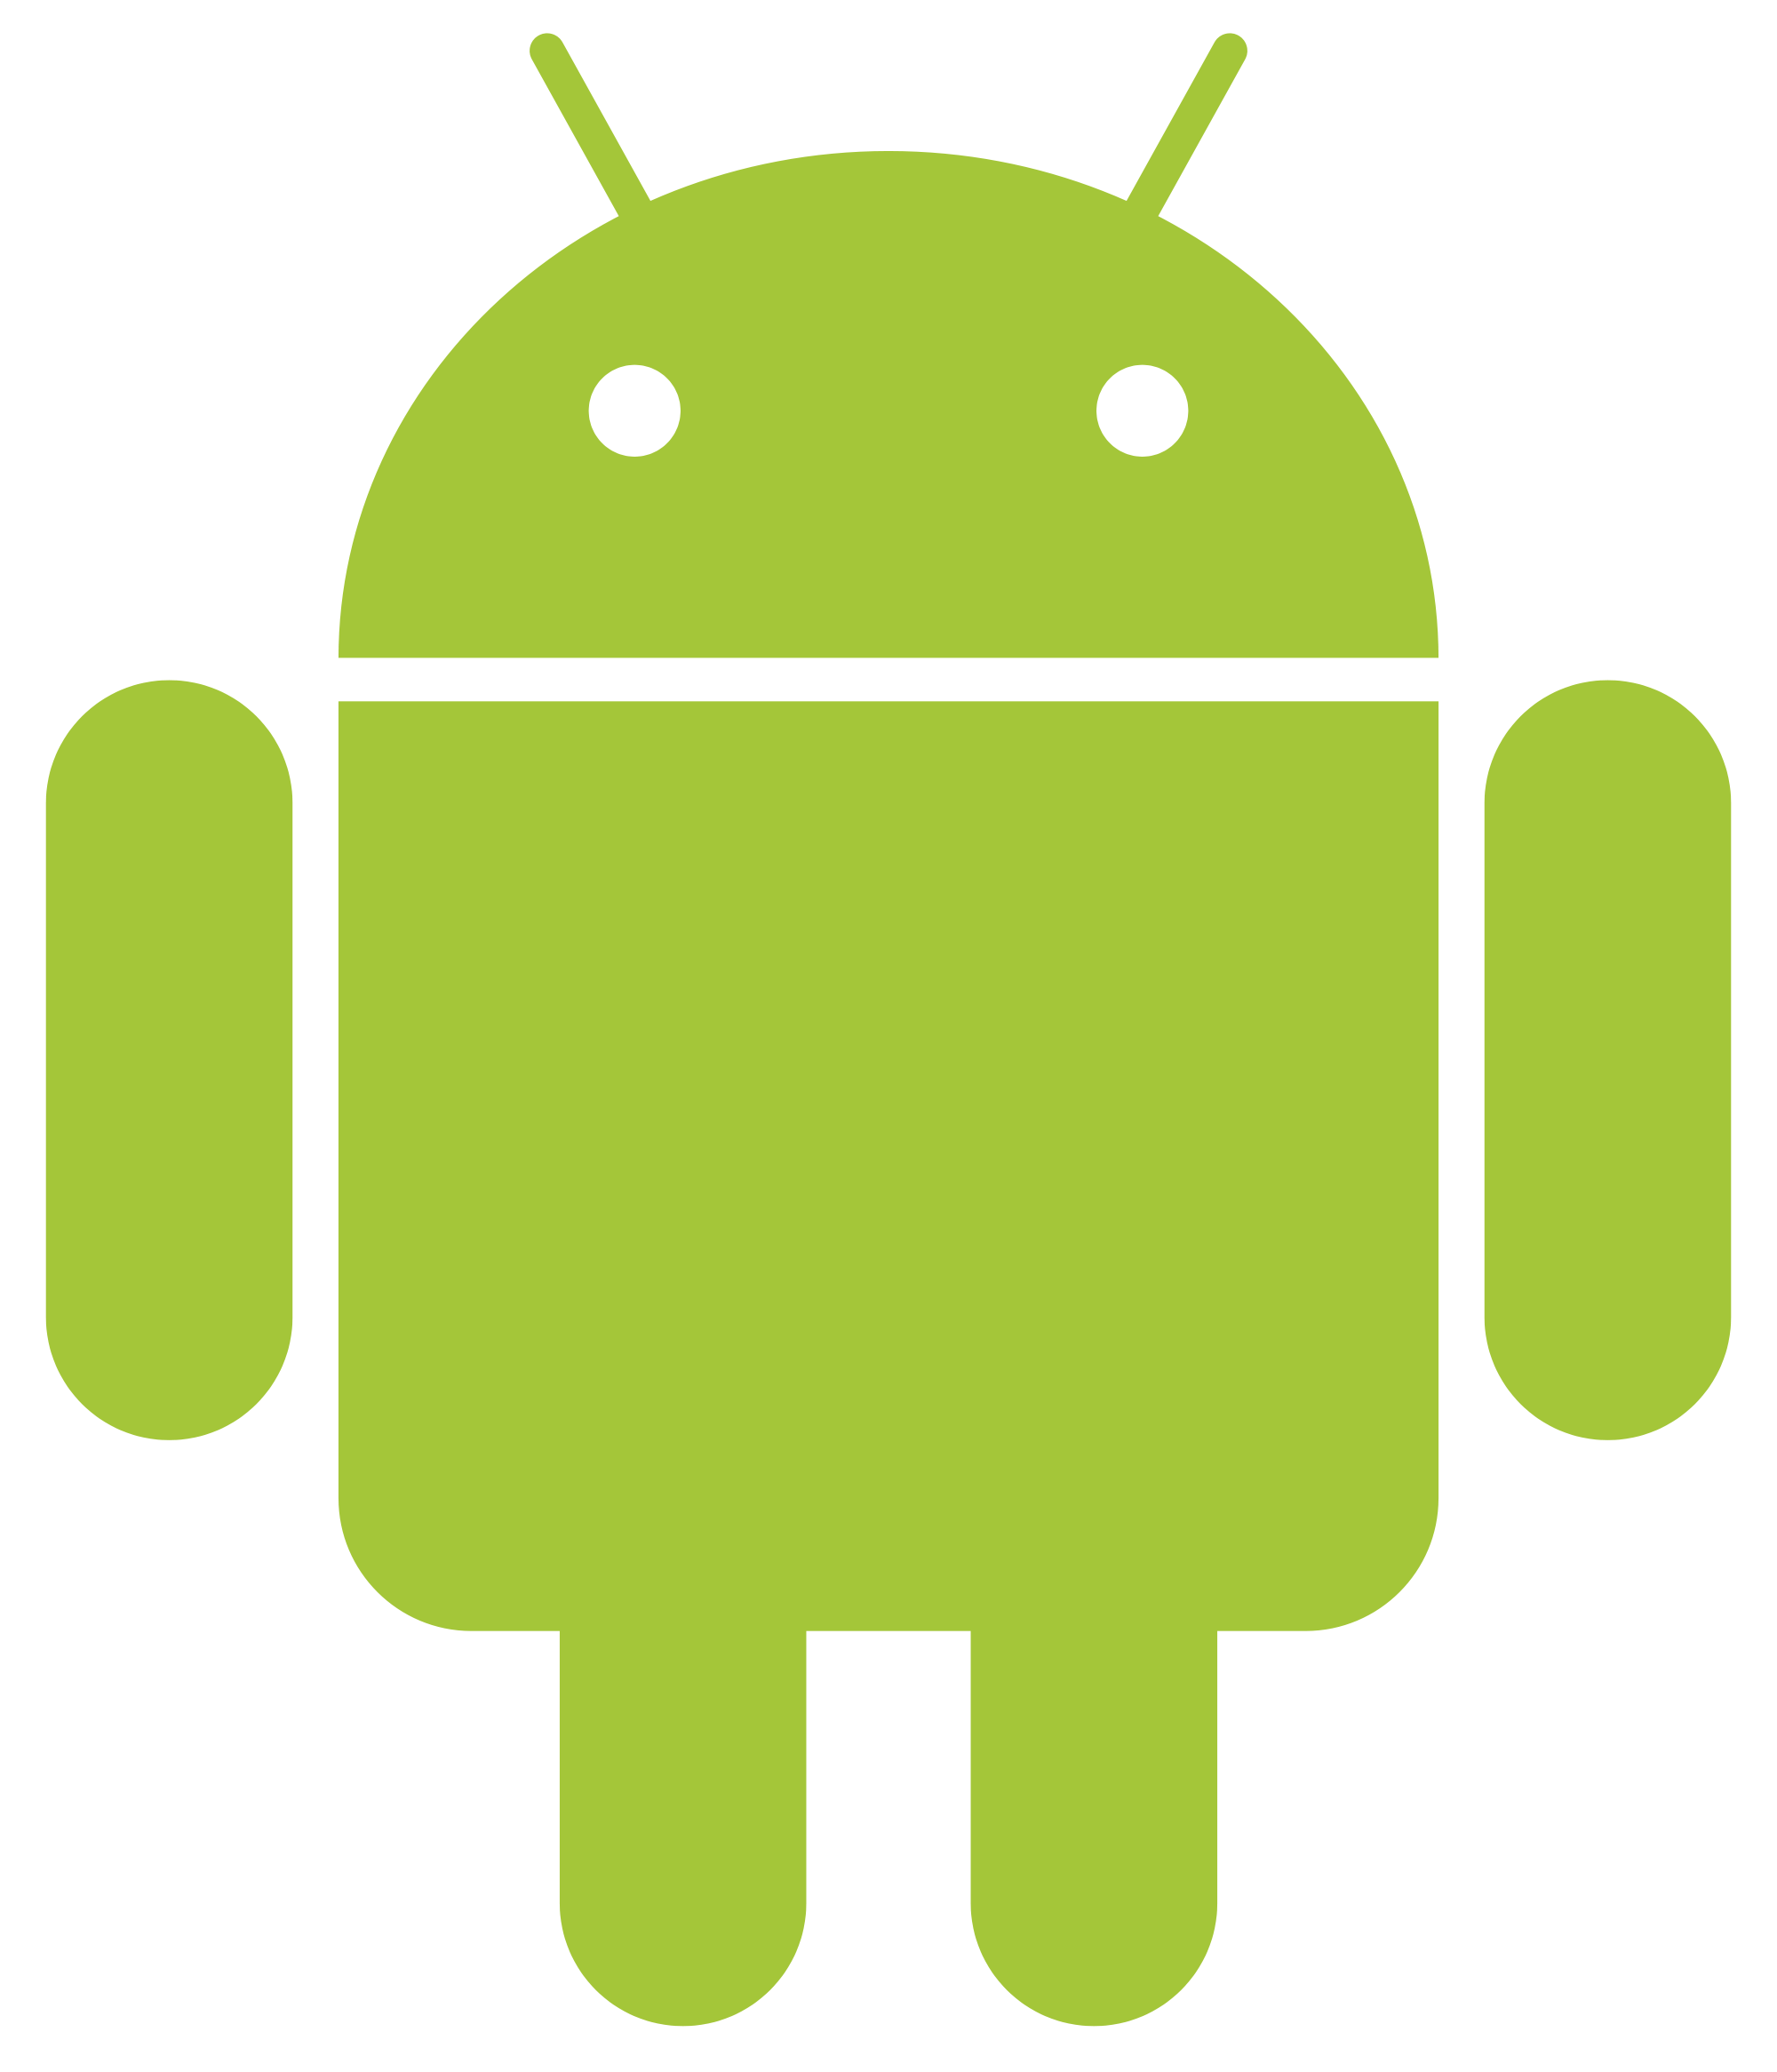 আপনার Android ফোনের জন্য ডাউনলোড করে নিন ফোনের Install করা যেকোন Apps এর Icon পরিবর্তন করার জন্য দারুন এক সফটওয়্যার…